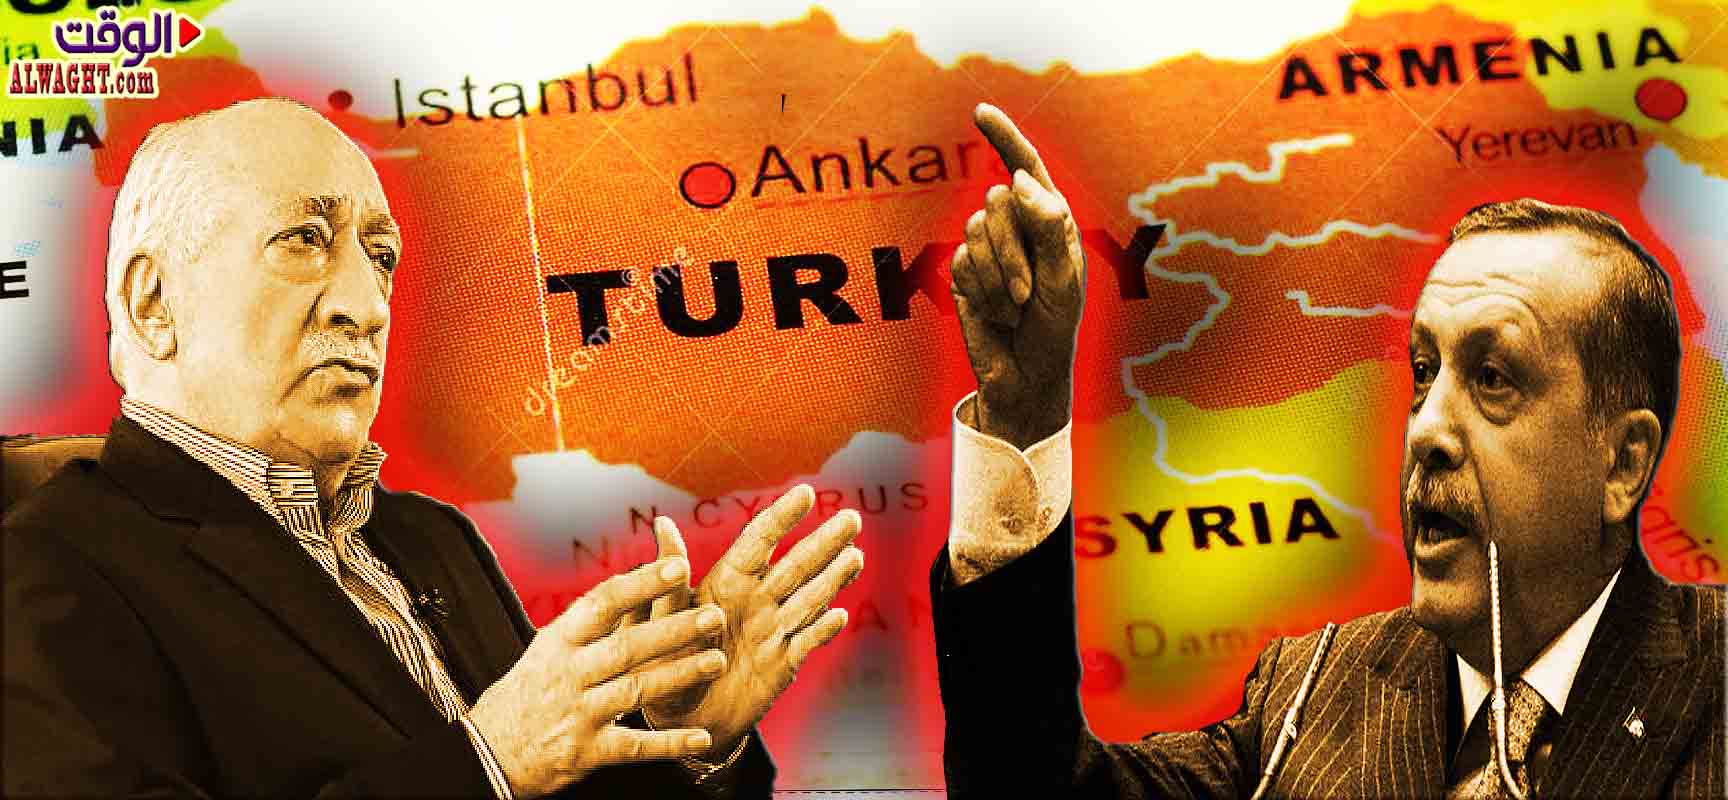 في حلقة جديدة من صراع اردوغان- غولن  ...المحكمة تطالب باعتقال الاخير علي خلفية إنشاء "تنظيم الدولة الموازية"